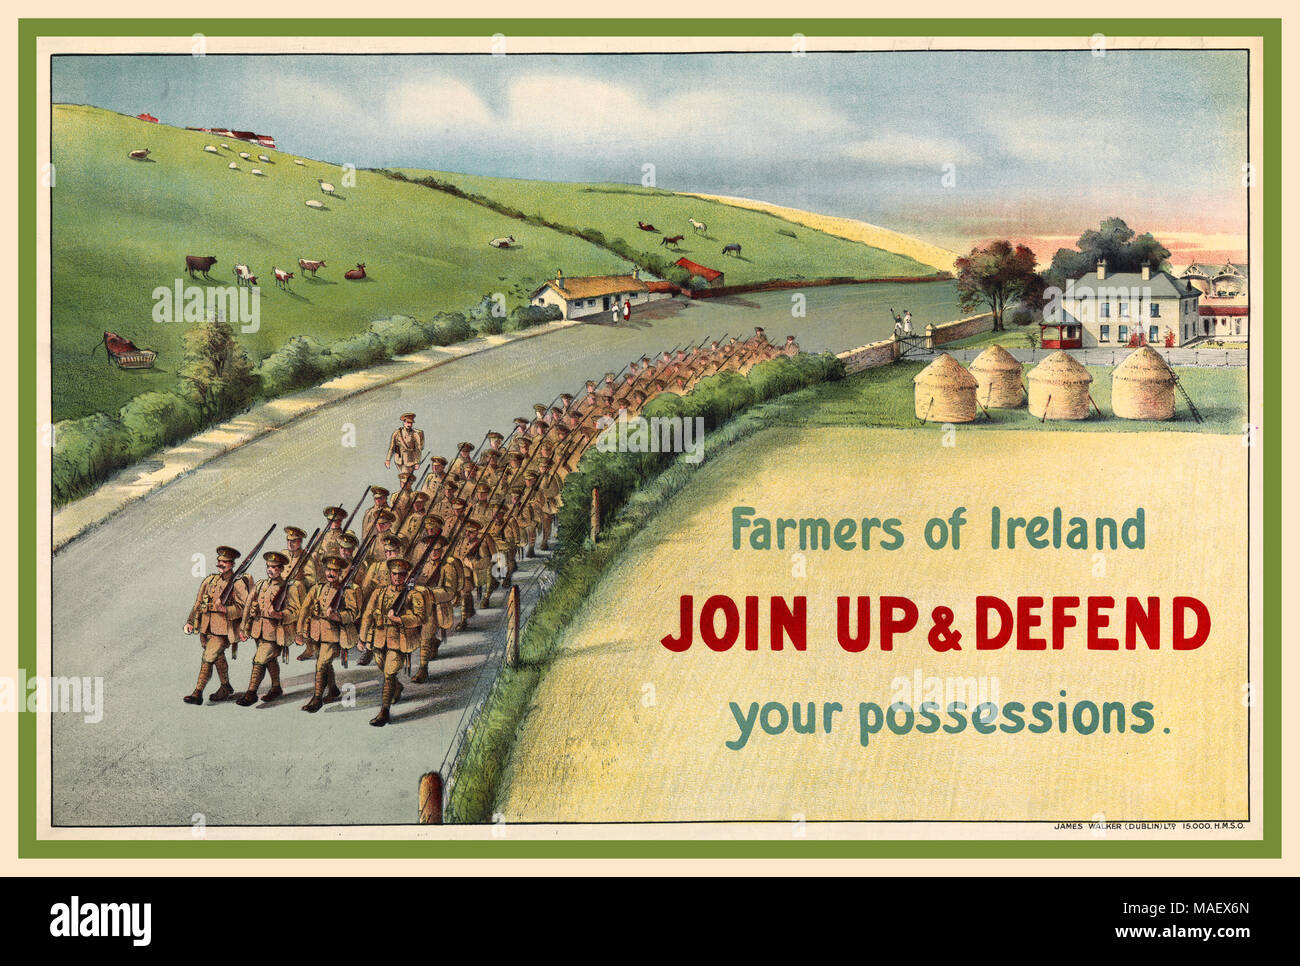 1914 Vintage WW1 affiche de propagande de recrutement avec la colonne de soldats irlandais marchant le long d'une route de campagne en Irlande, en passant par les meules, les maisons et les animaux qui paissent dans les champs. Les agriculteurs de l'Irlande INSCRIVEZ-VOUS POUR DÉFENDRE vos biens. 140000 hommes irlandais a rejoint l'armée britannique en Irlande pour combattre dans la Première Guerre mondiale. Banque D'Images